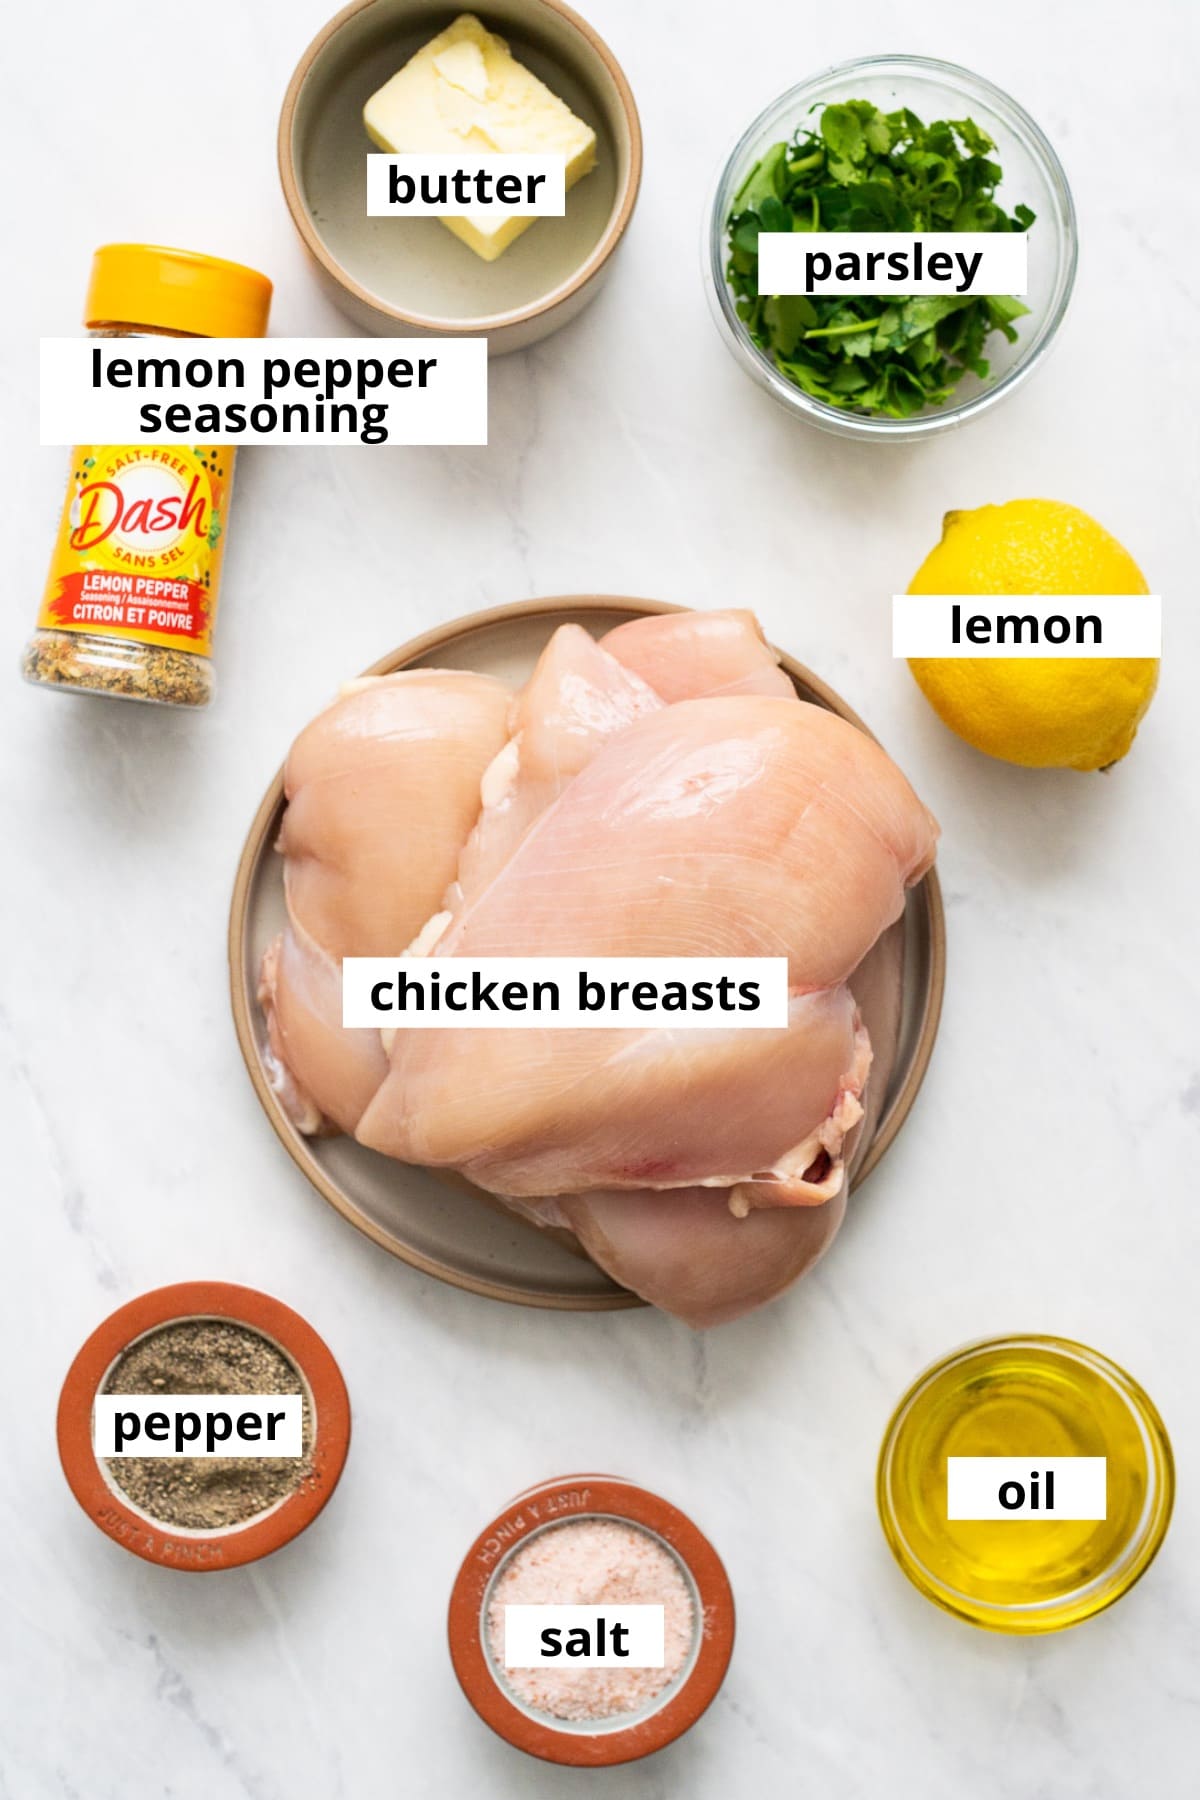 Boneless skinless chicken breasts, lemon pepper seasoning, butter, lemon, parsley, oil, salt and pepper.